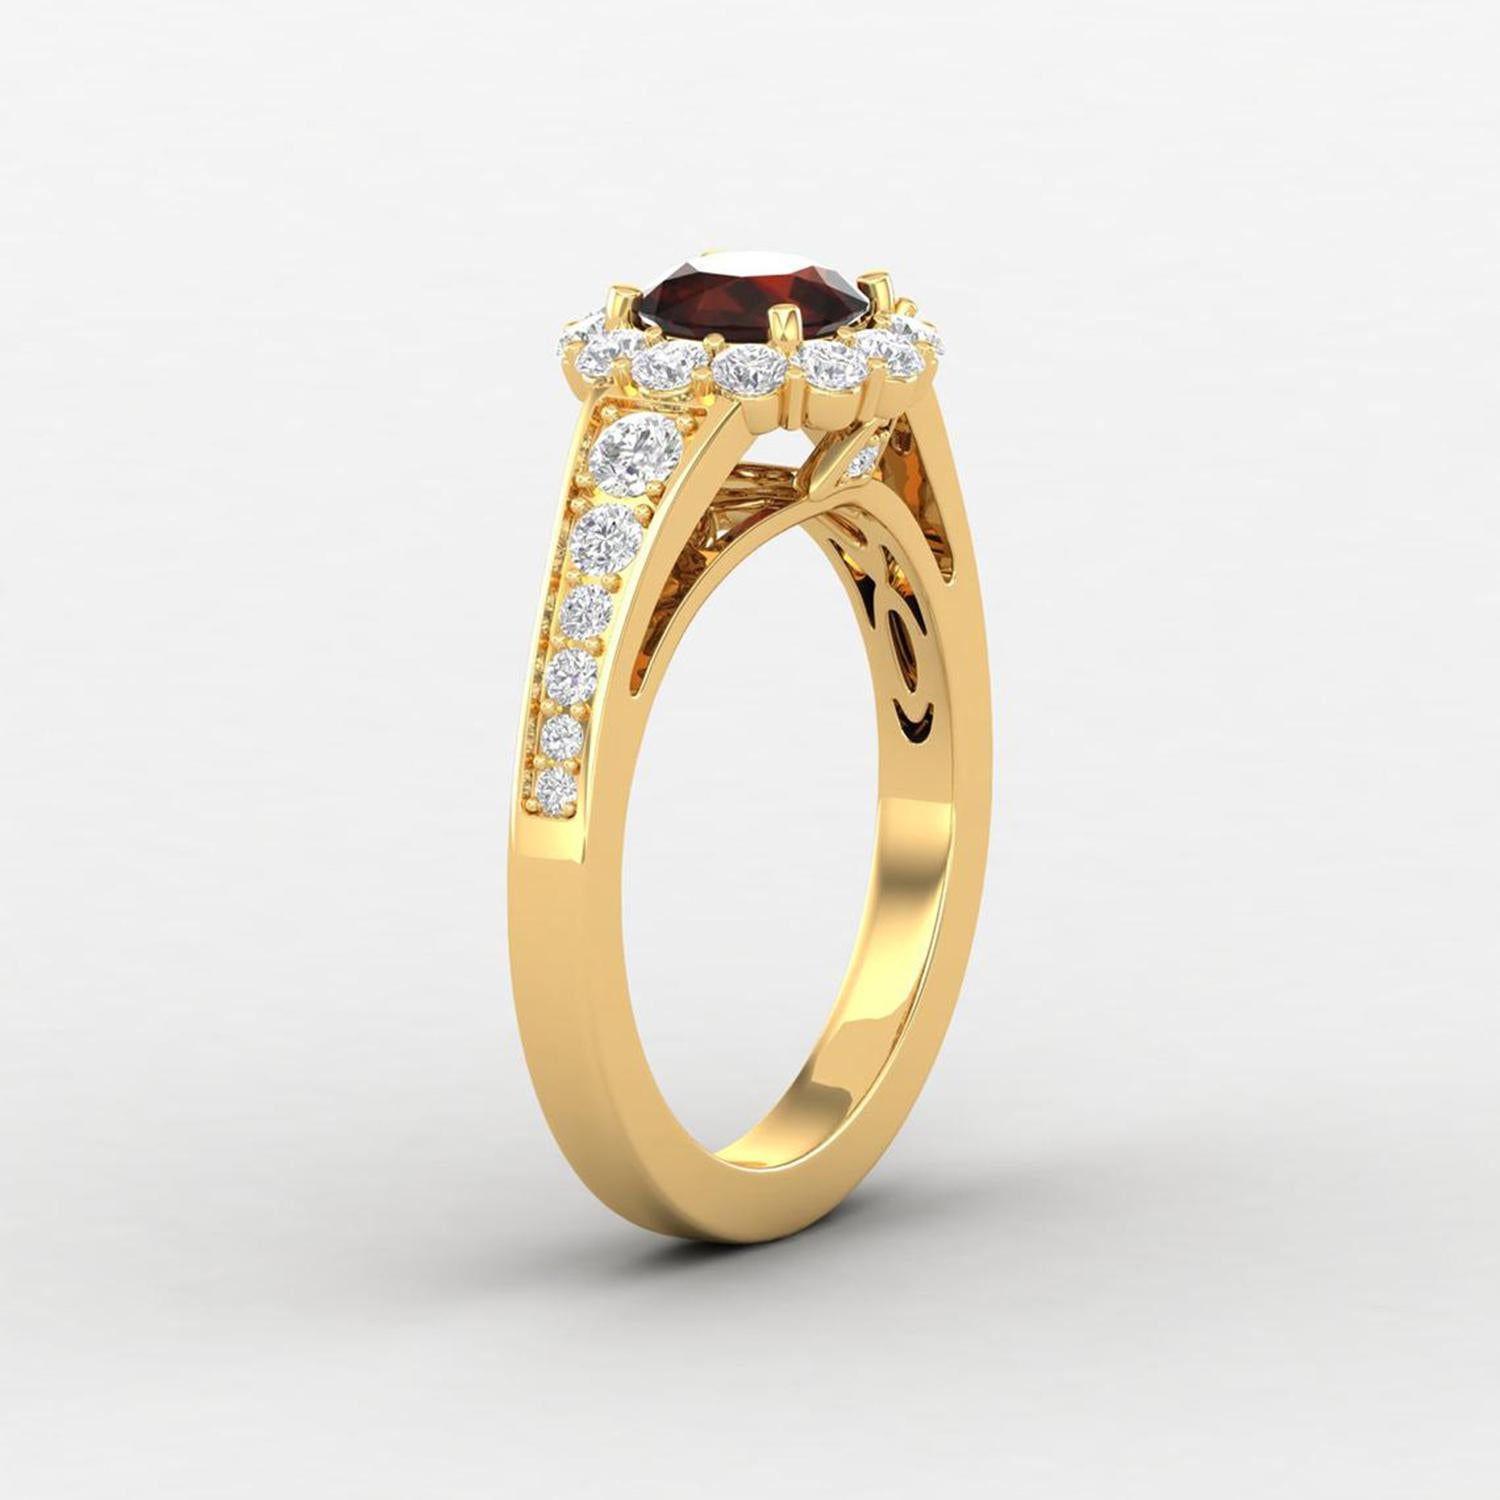 Detalles del artículo:-

✦ SKU:- JRG00360YYY

✦ Especificación del producto:-
- Oro Kt: 14K (también disponible en 18K)
- Color de oro disponible: Oro rosa, Oro amarillo, Oro blanco
- Granate redondo: 1 ud. 5 MM
- Diamante redondo (H-I) (SI): 2